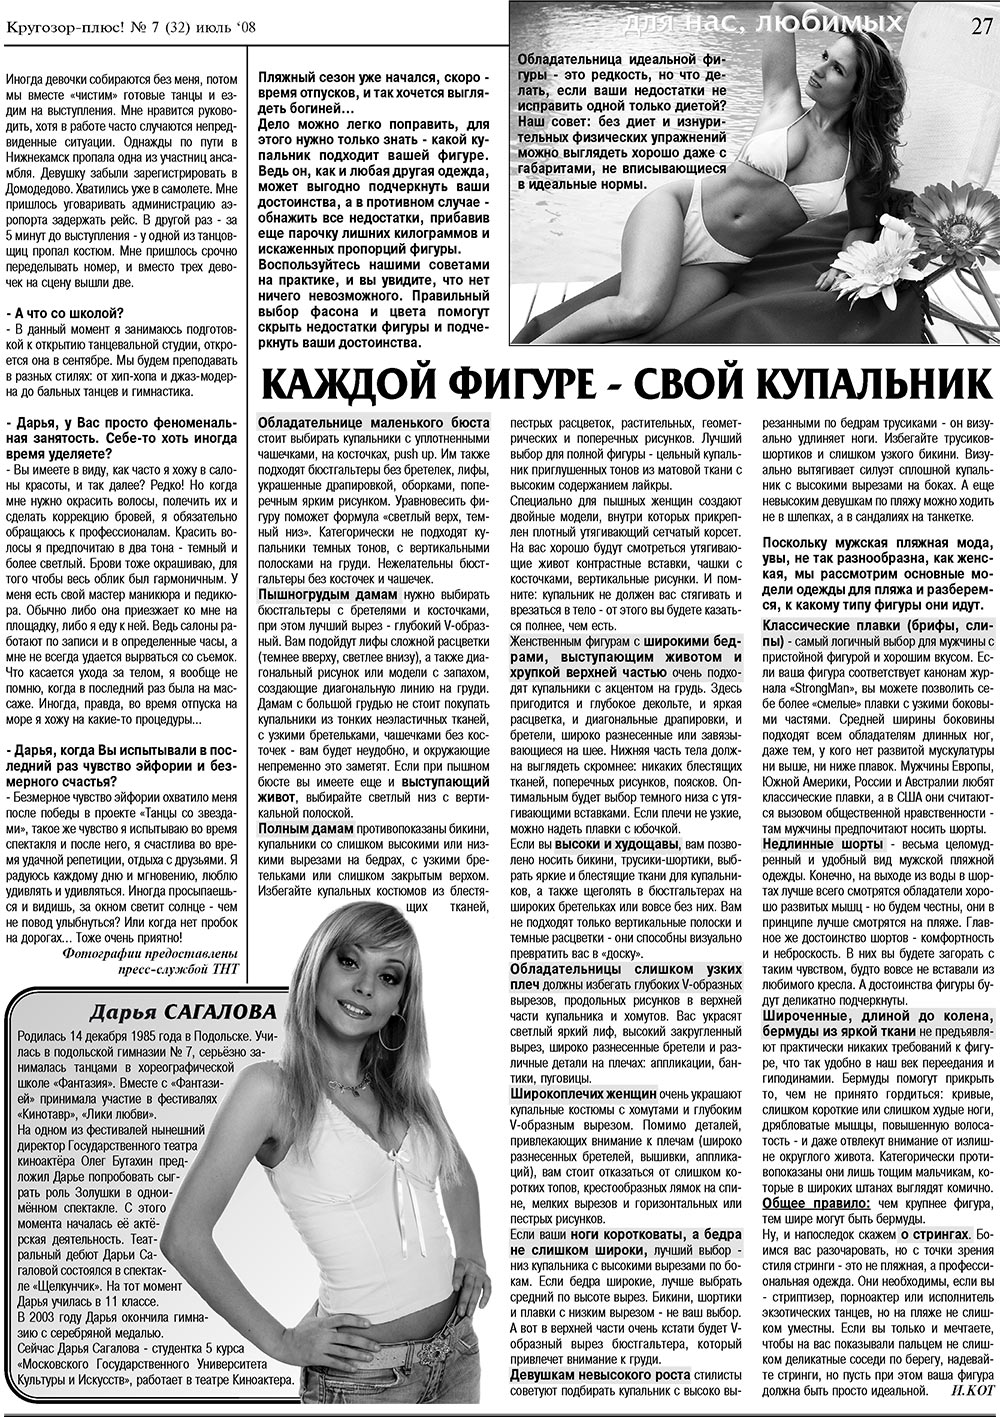 Кругозор плюс!, газета. 2008 №7 стр.27